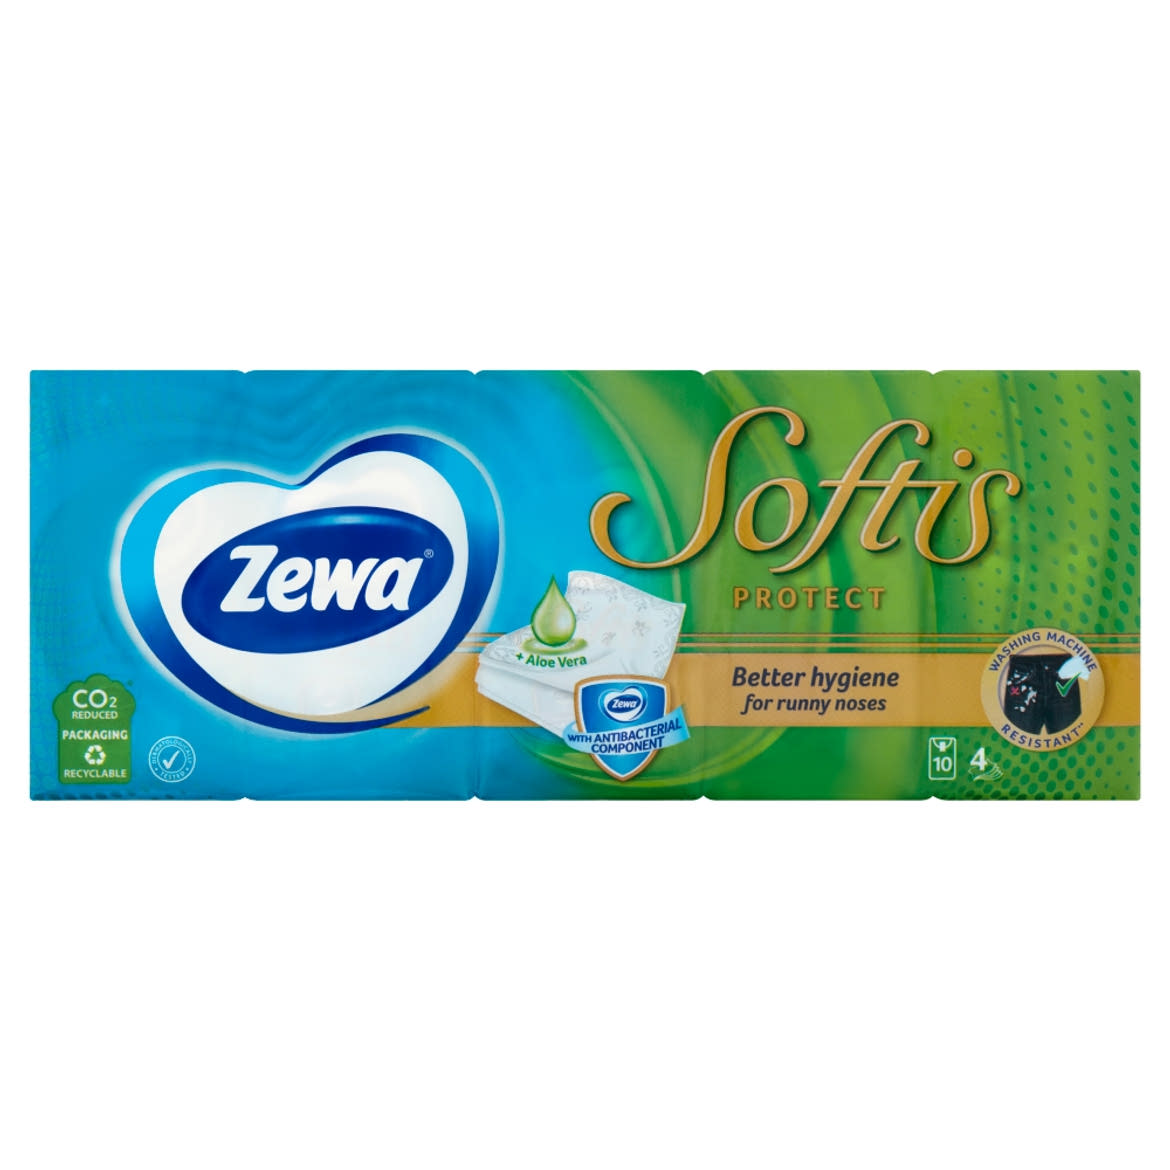 Zewa Softis Protect illatosított papírzsebkendő 4 rétegű 10 x 9 db